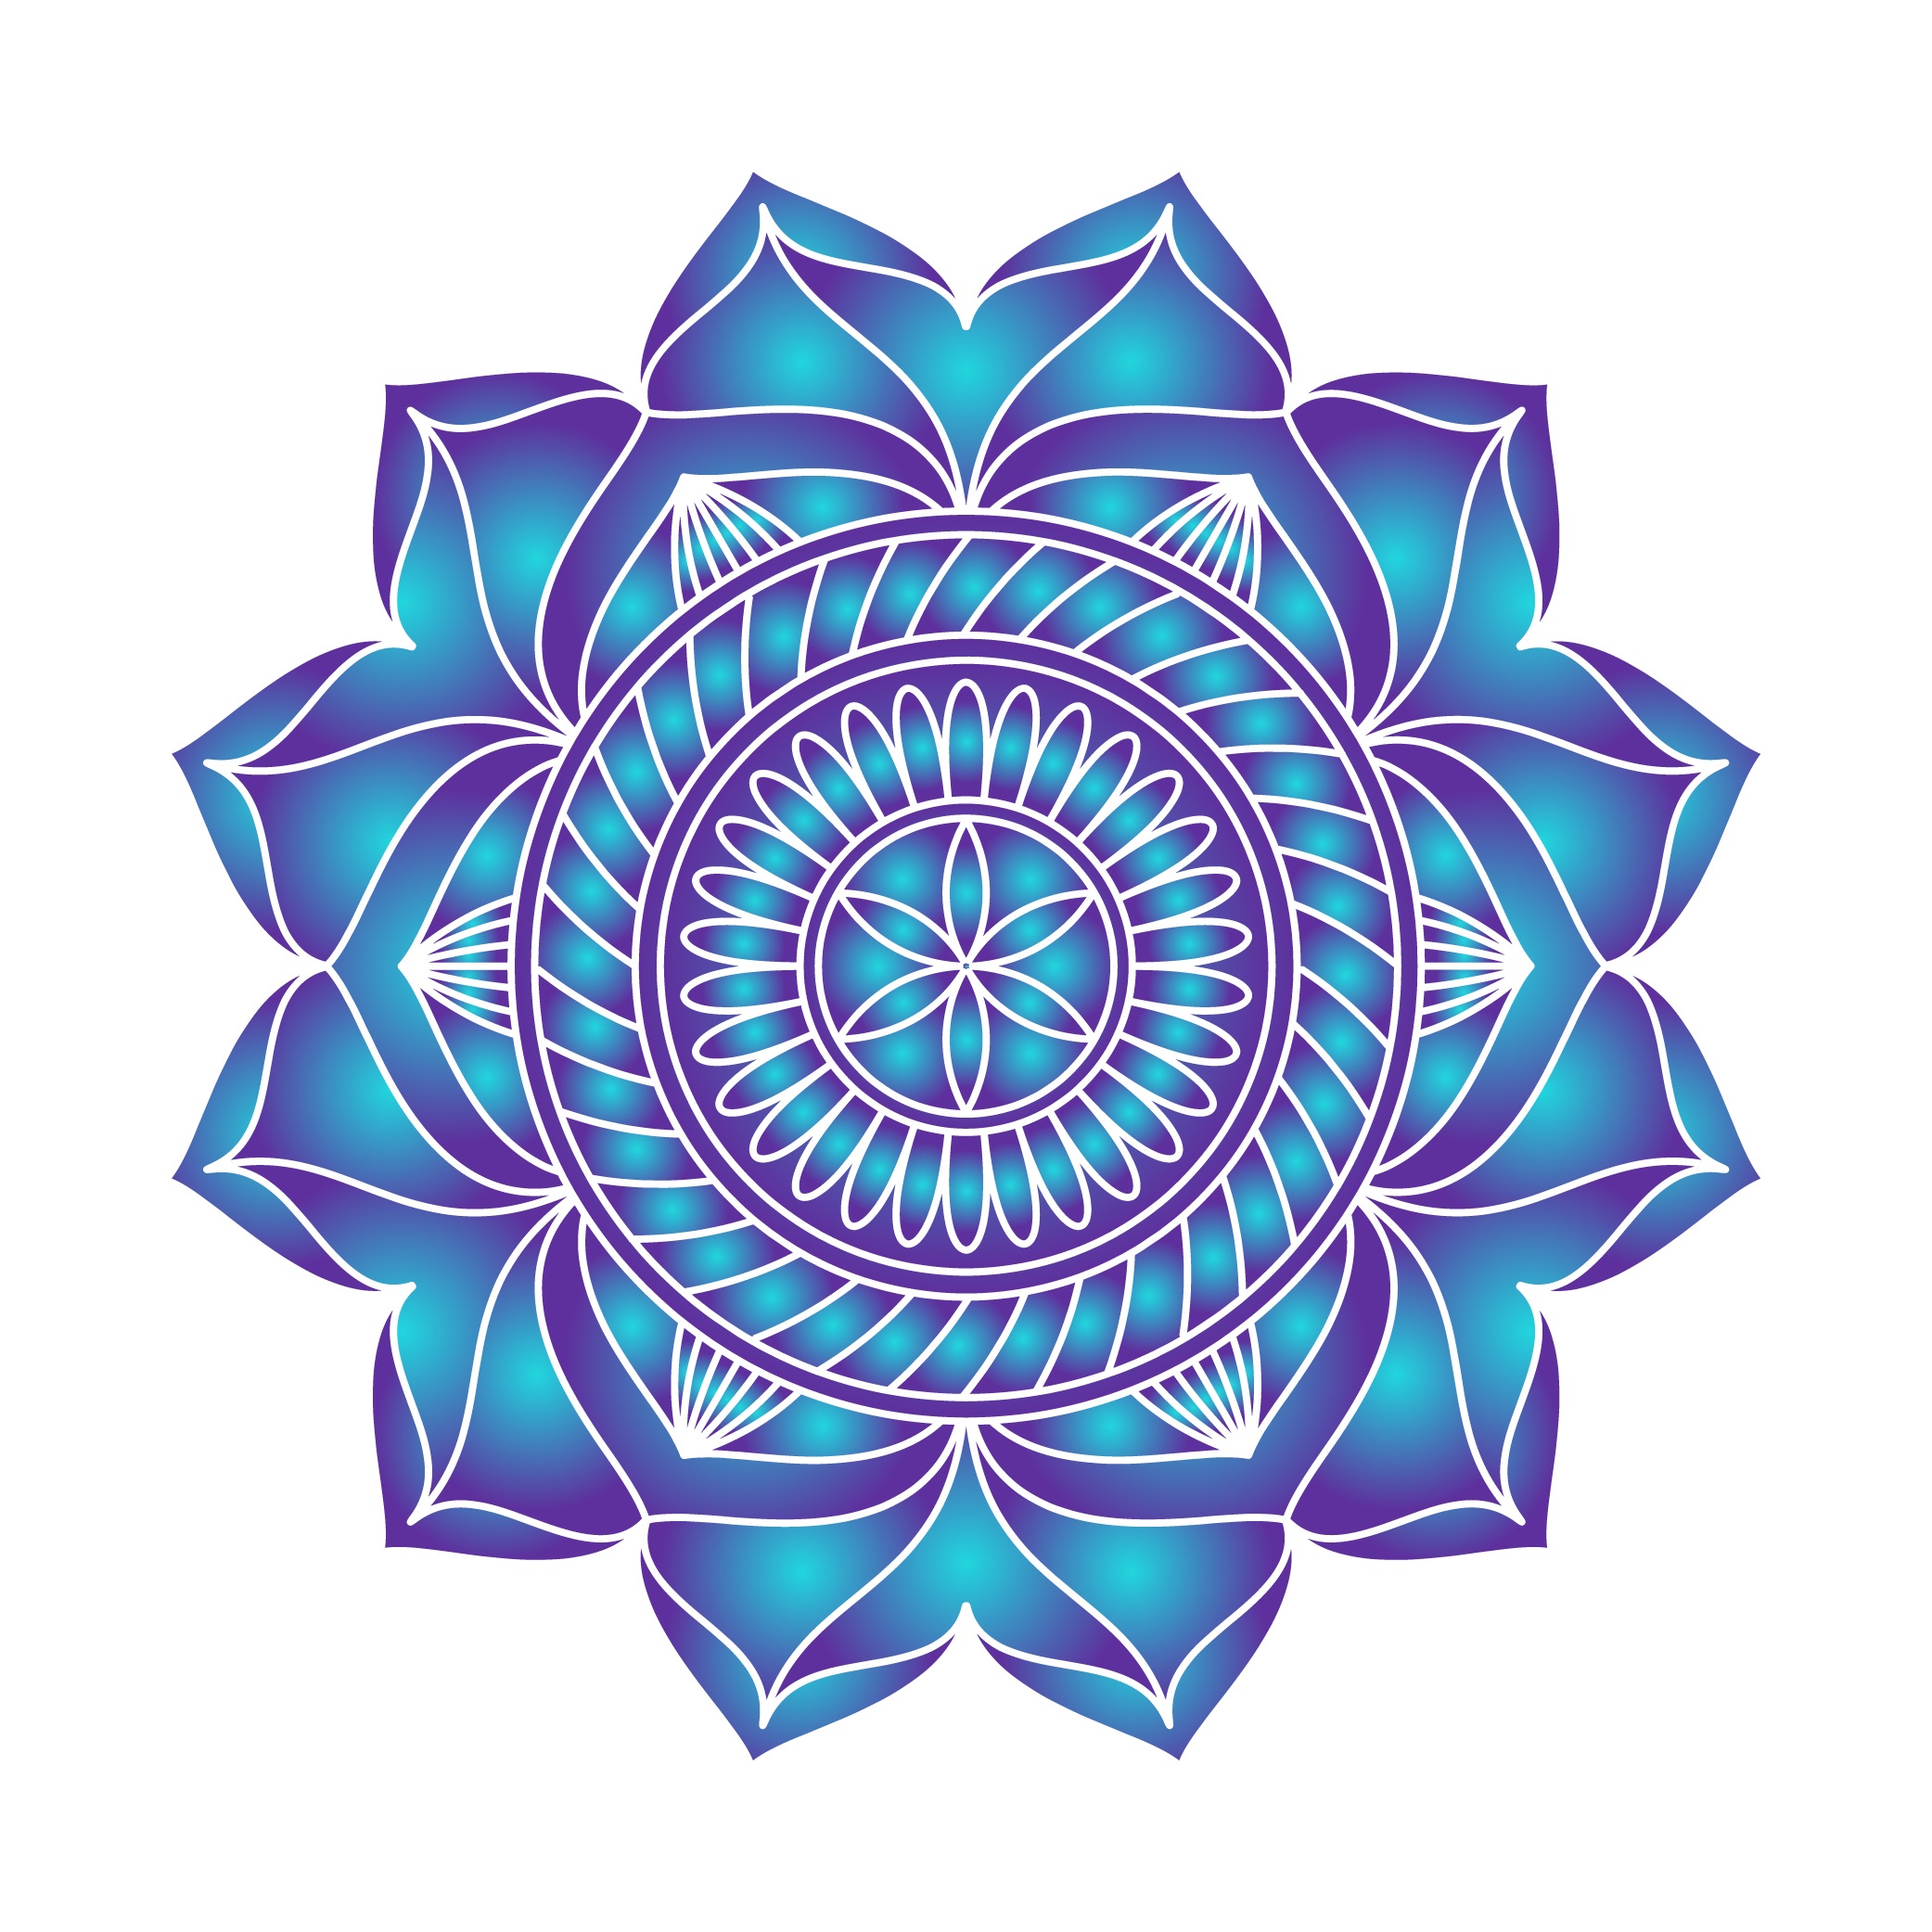 Download Mandala ornament vector image - Download Free Vectors ...